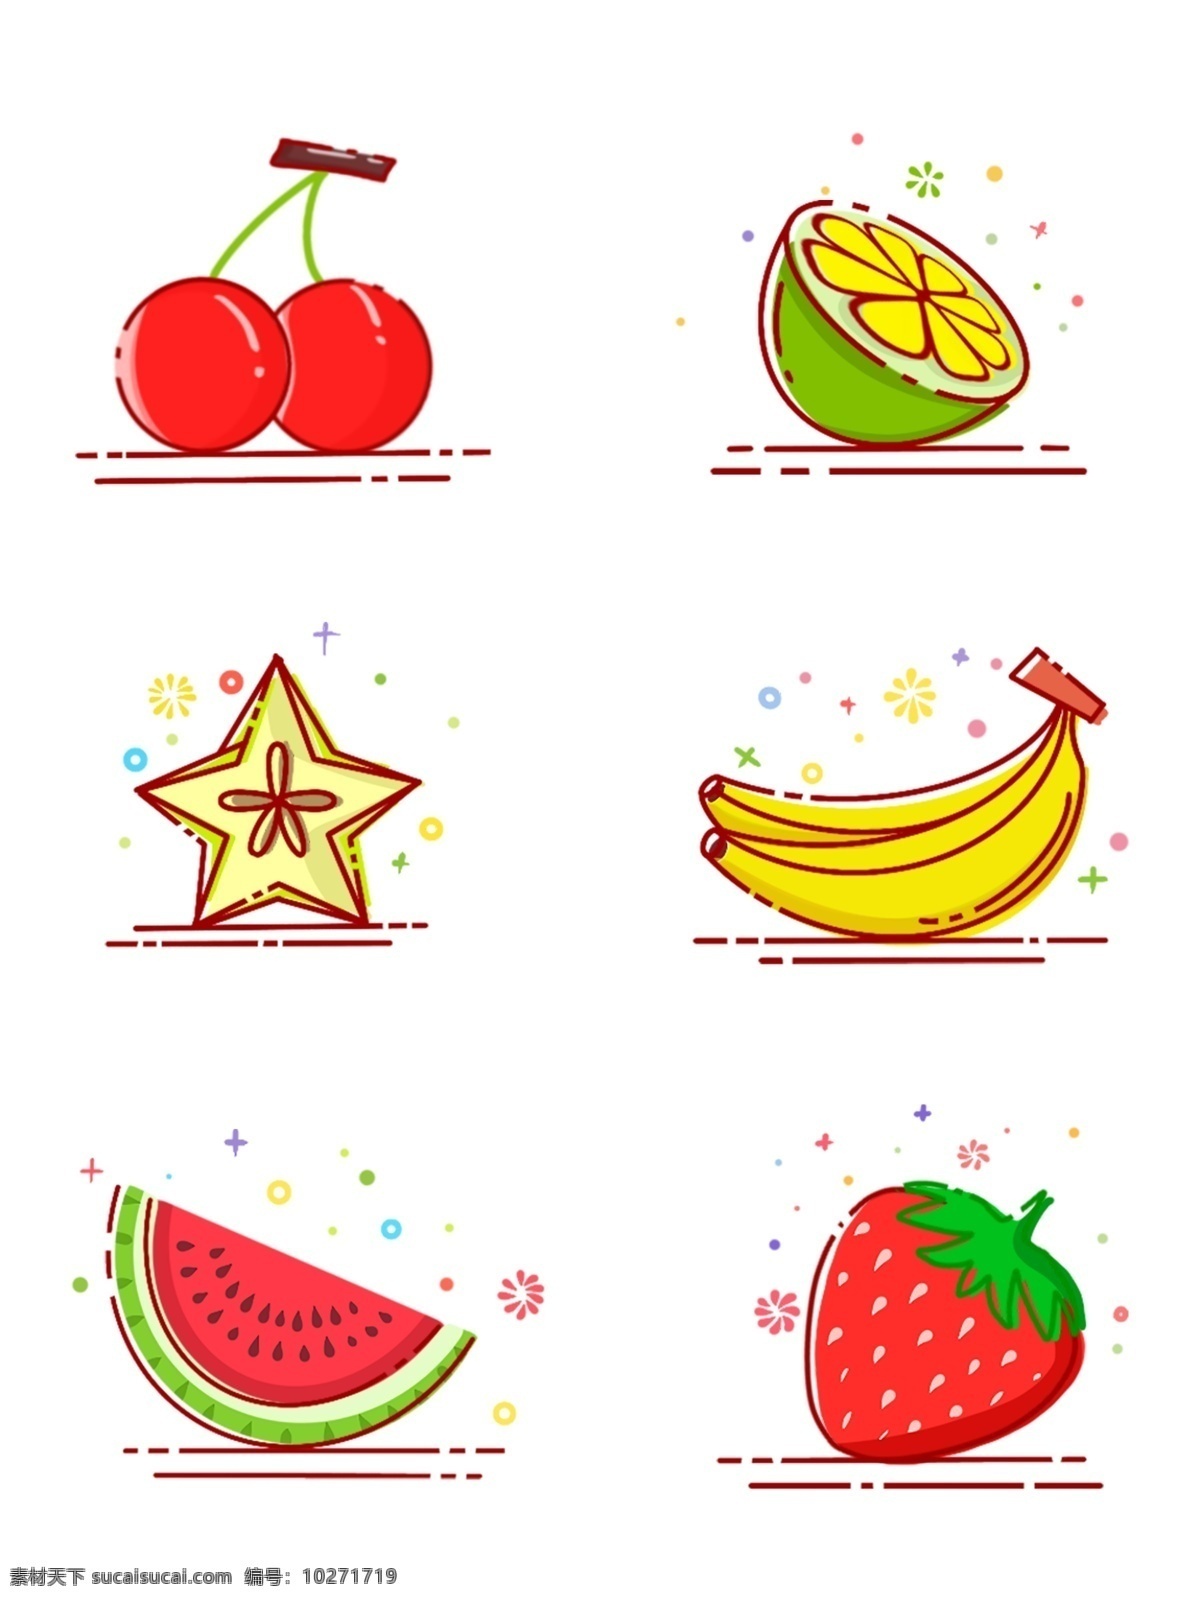 卡通水果 香蕉 简笔 手绘 夏季 手绘卡通素材 卡通樱桃 卡通西瓜 卡通柠檬 卡通草莓 卡通杨桃 水彩 健康 水果 美味 彩绘 卡通香蕉 卡通设计